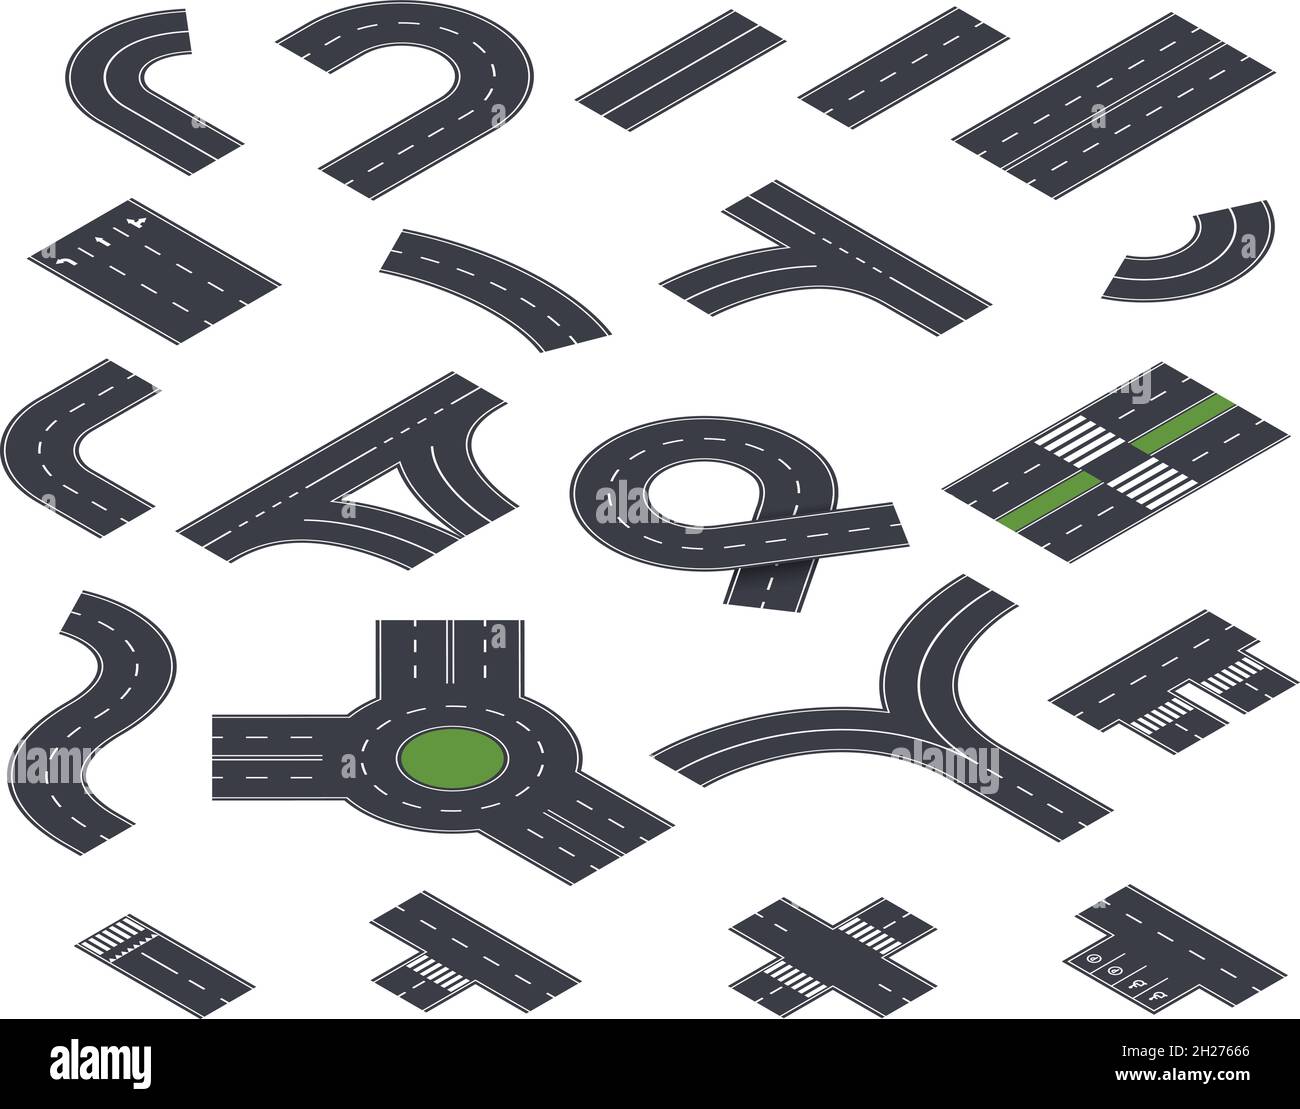 Isometrische Straßensammlung. Baugewerbe, Straßen und Straßenbelag. Asphalt Autobahn in Perspektive, Stadtkarte Weg genaue Vektor-Elemente Stock Vektor